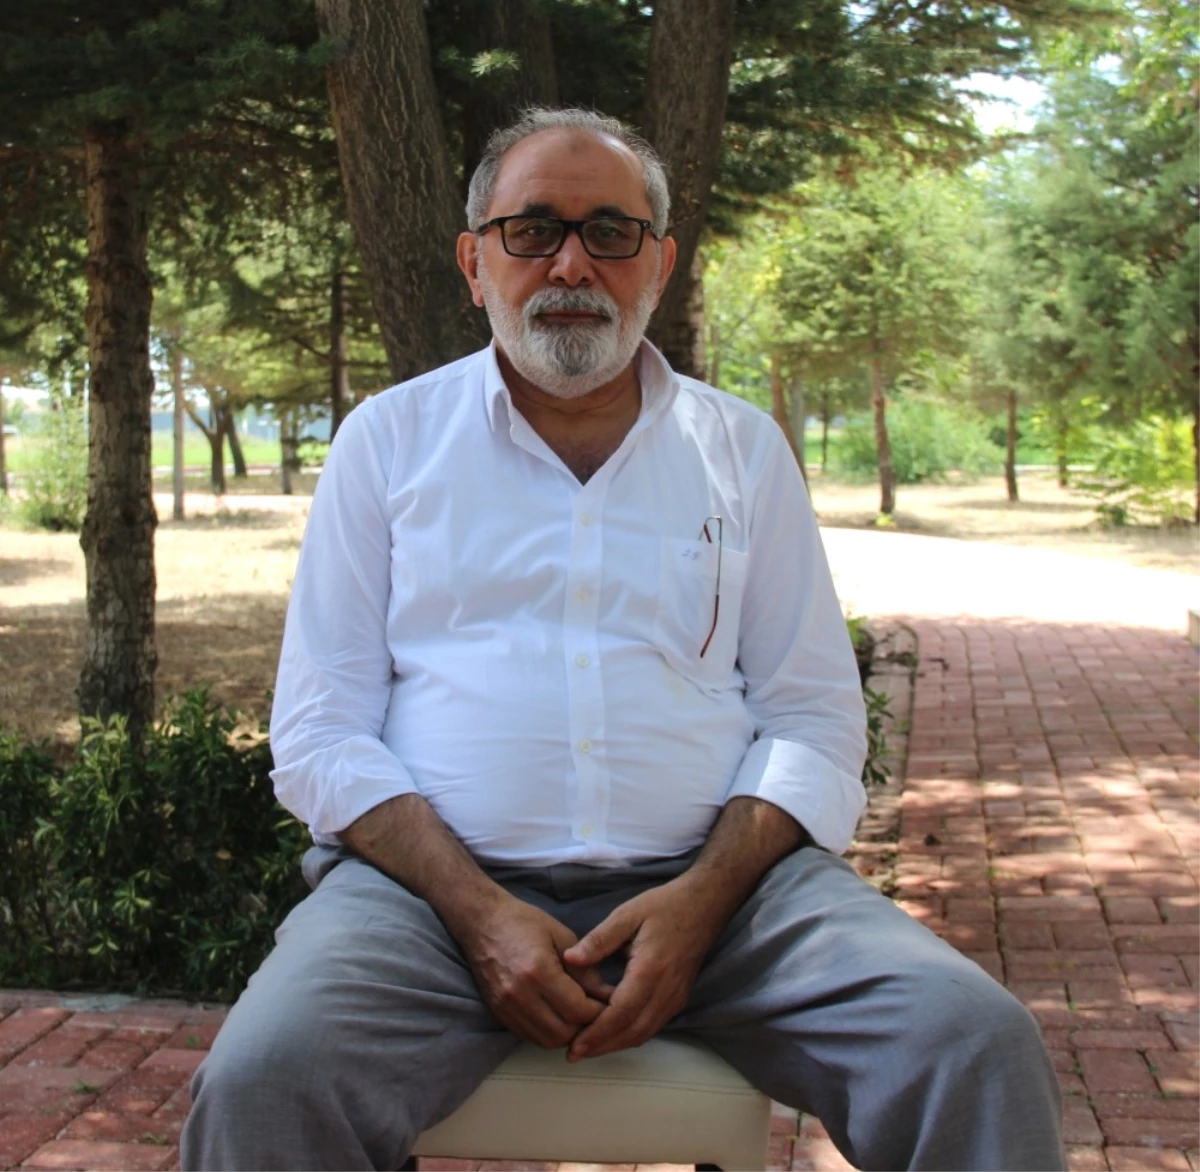 Elazığspor Başkan Adayı Yumakgil: "Taşın Altına Elimizi Koymamız Lazım"